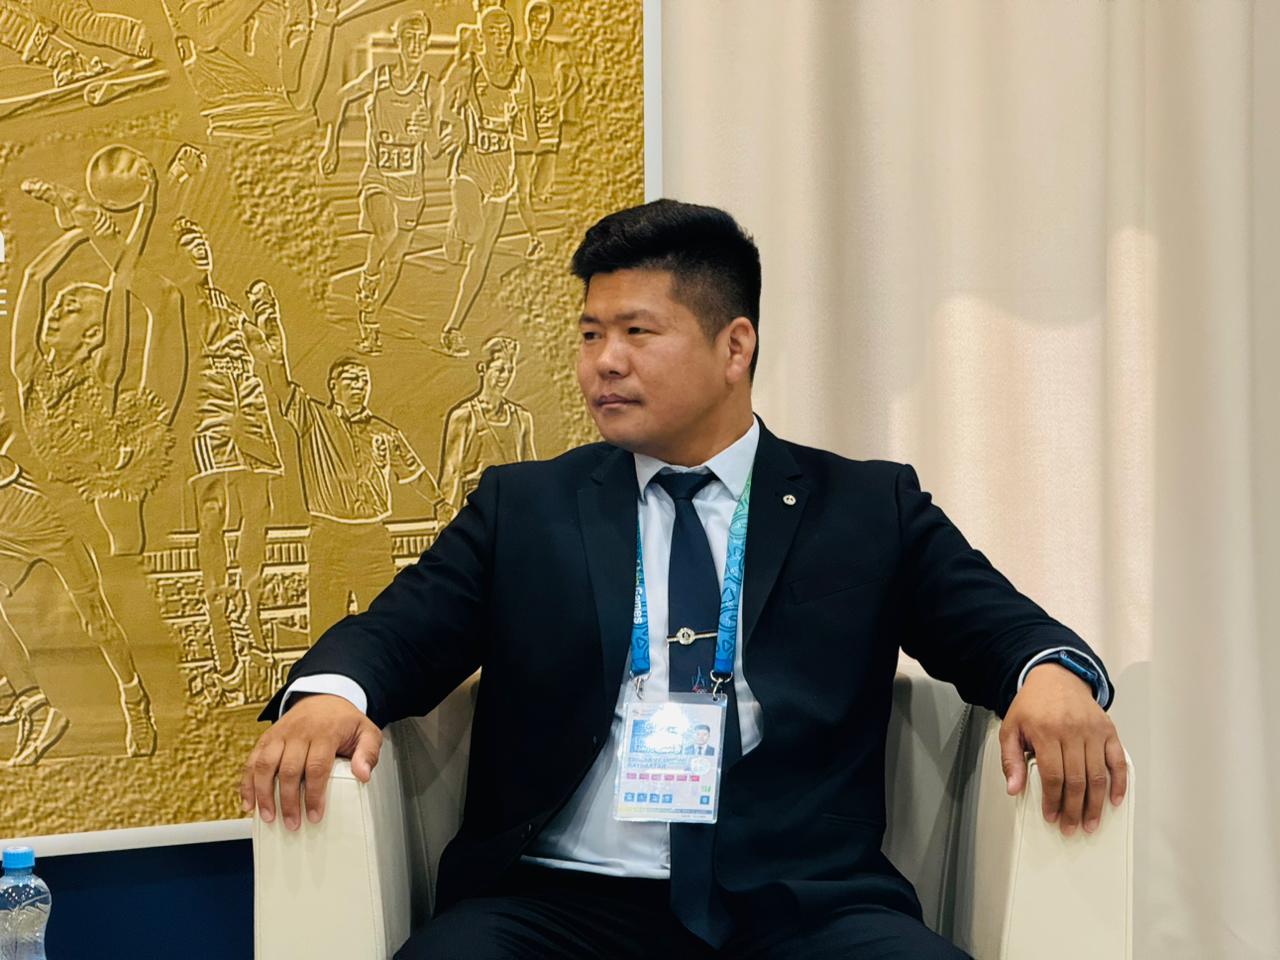 Руководитель сборной Монголии: «Наши олимпийские чемпионы начинали свой путь на Играх «Дети Азии»»